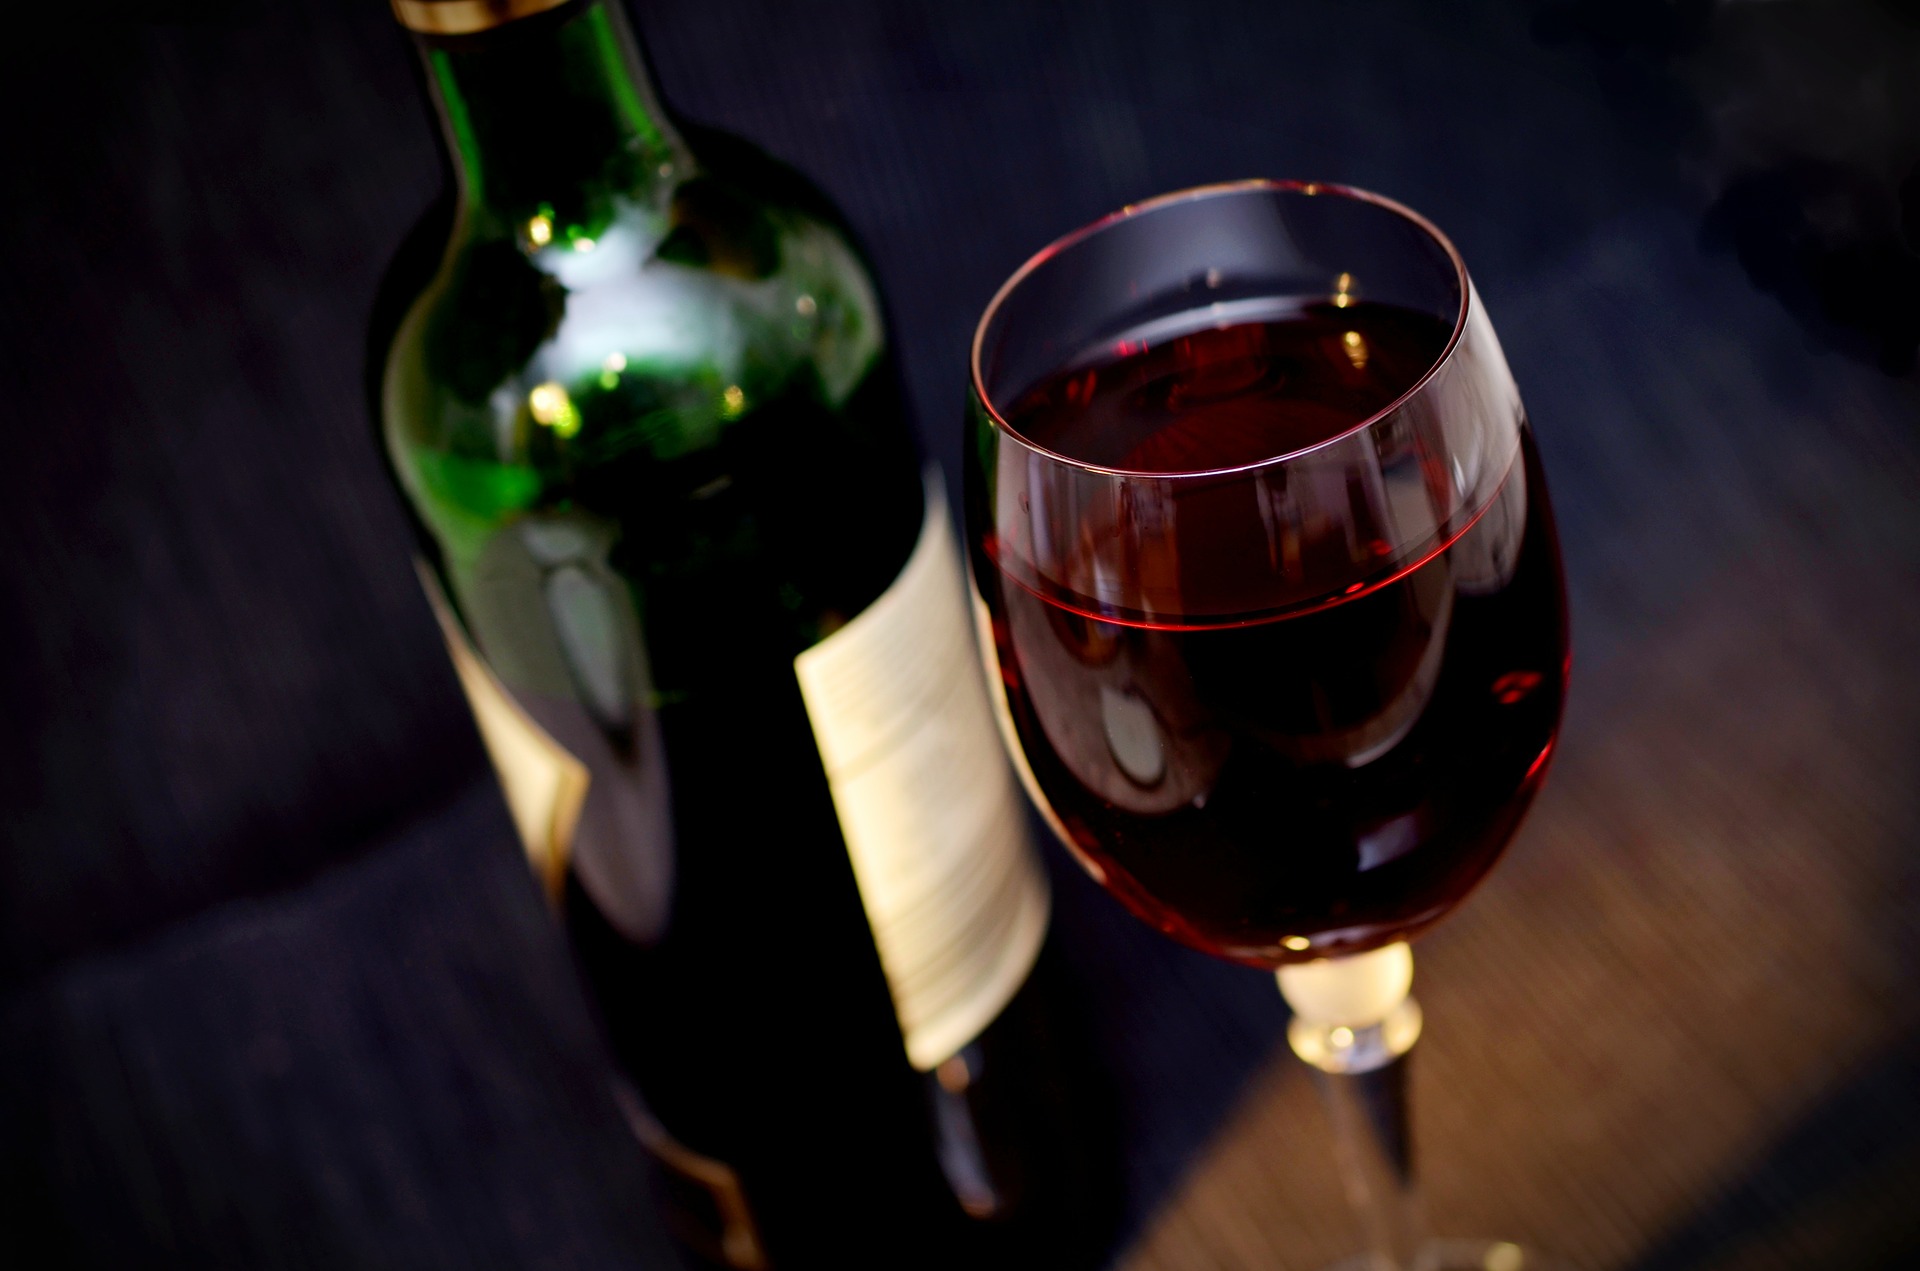 Wino do kolacji to zwyczaj popularny zwłaszcza wśród Francuzów, którzy rzadziej umierają z powodu chorób układu krążenia